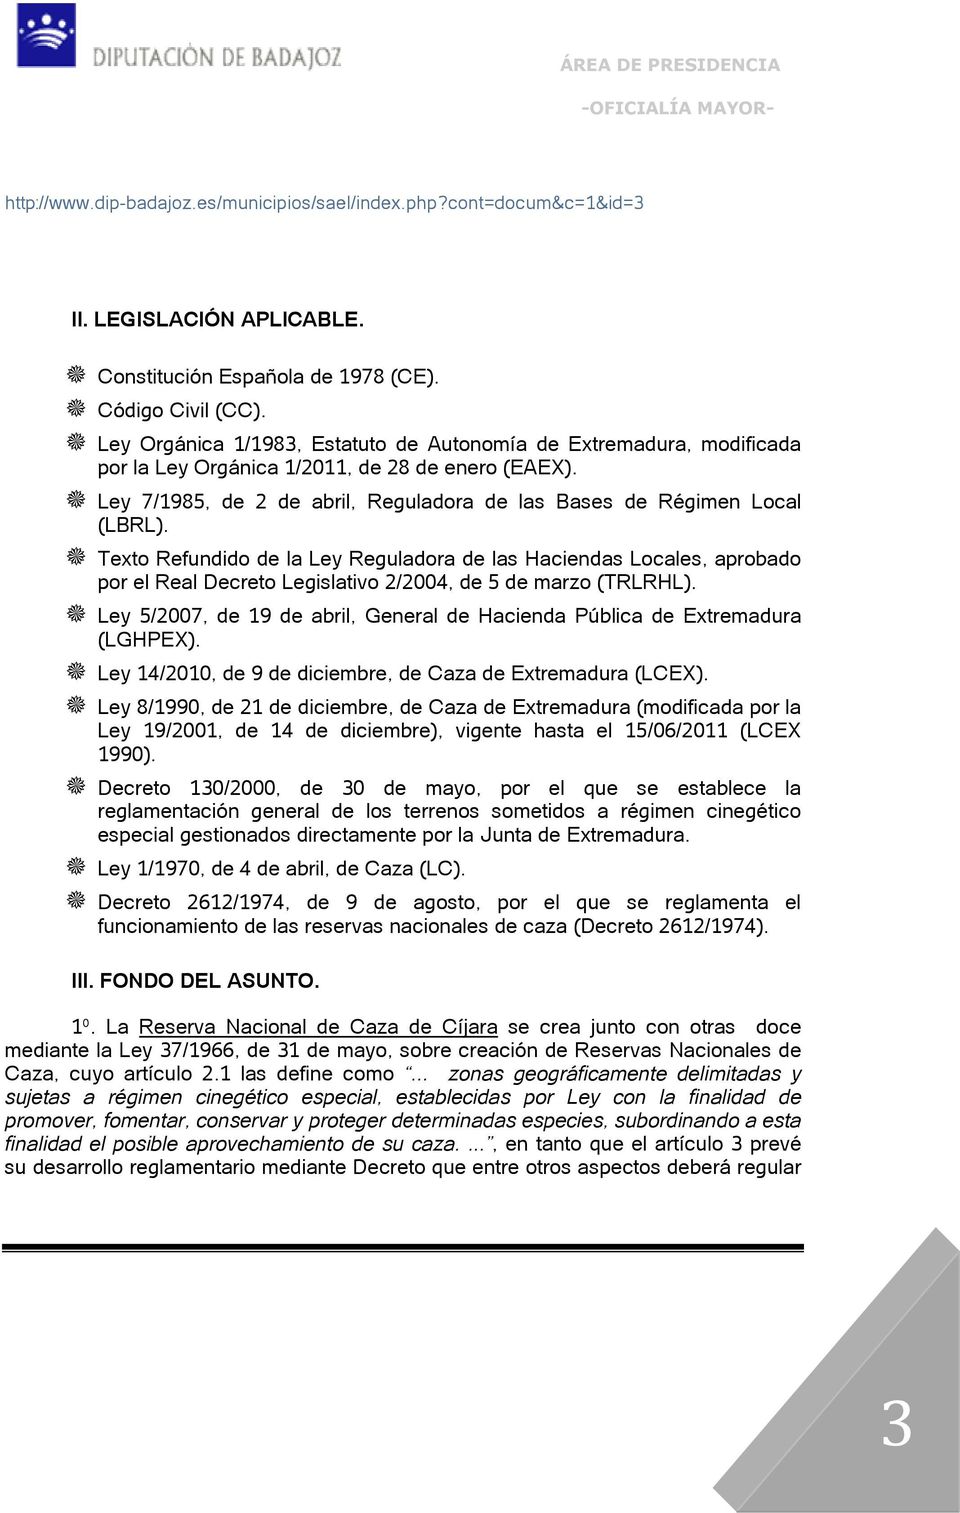 Texto Refundido de la Ley Reguladora de las Haciendas Locales, aprobado por el Real Decreto Legislativo 2/2004, de 5 de marzo (TRLRHL).